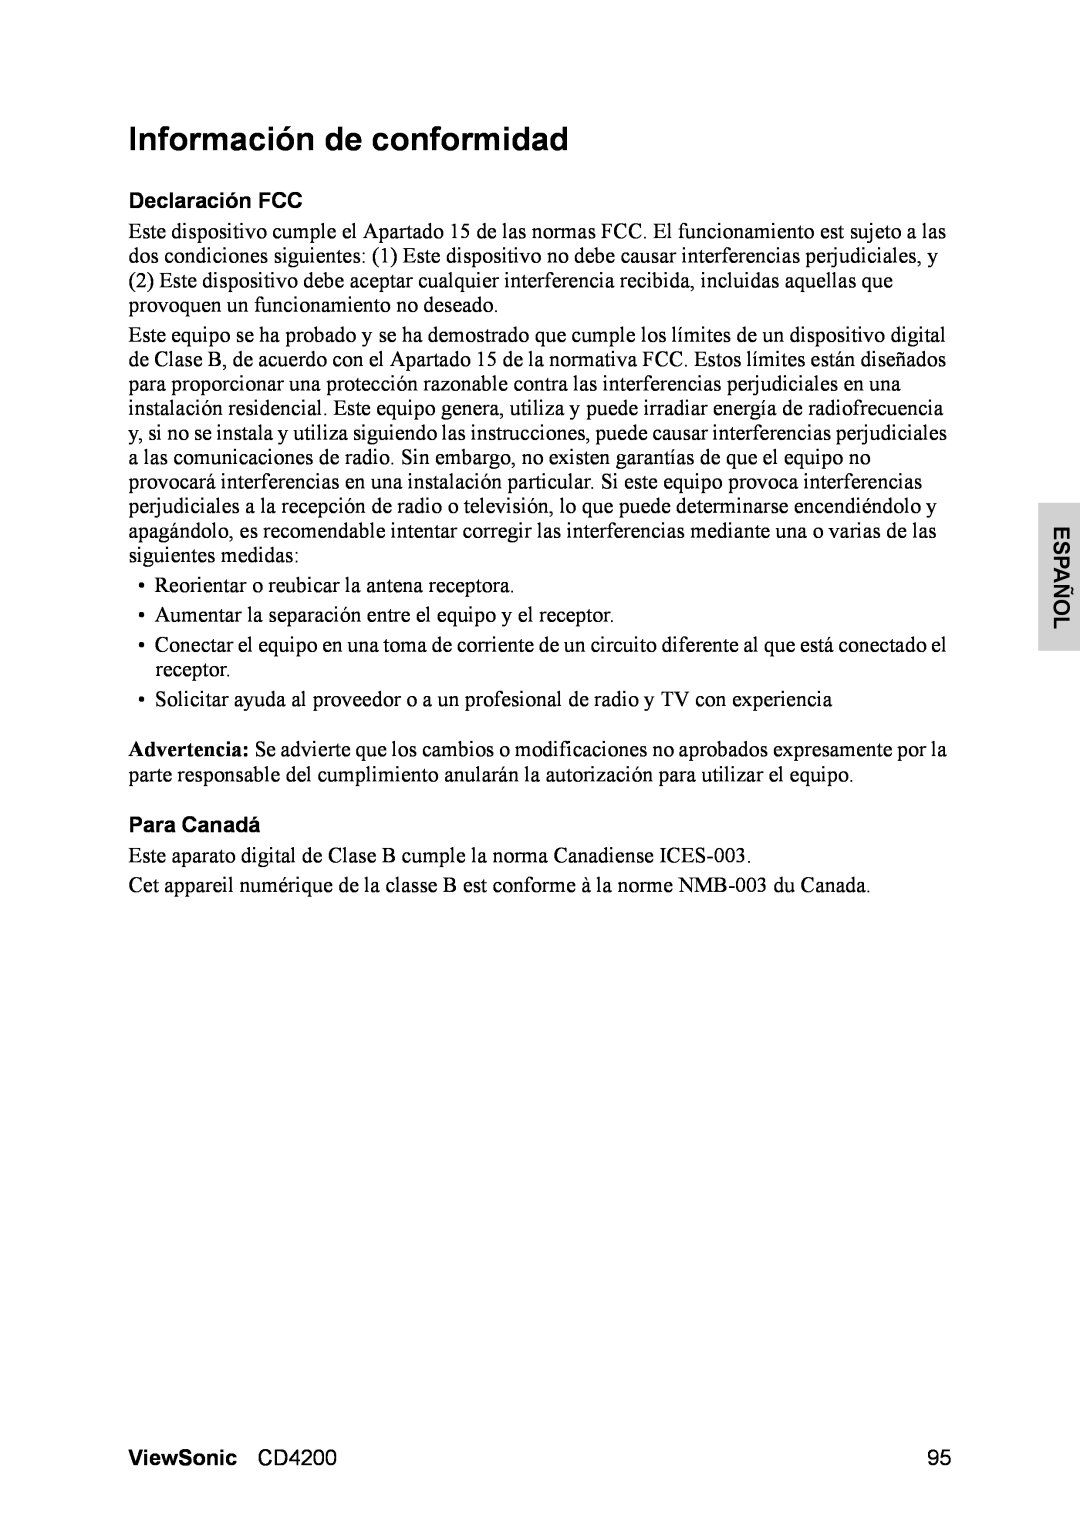 ViewSonic manual Información de conformidad, Declaración FCC, Para Canadá, Español, ViewSonic CD4200 